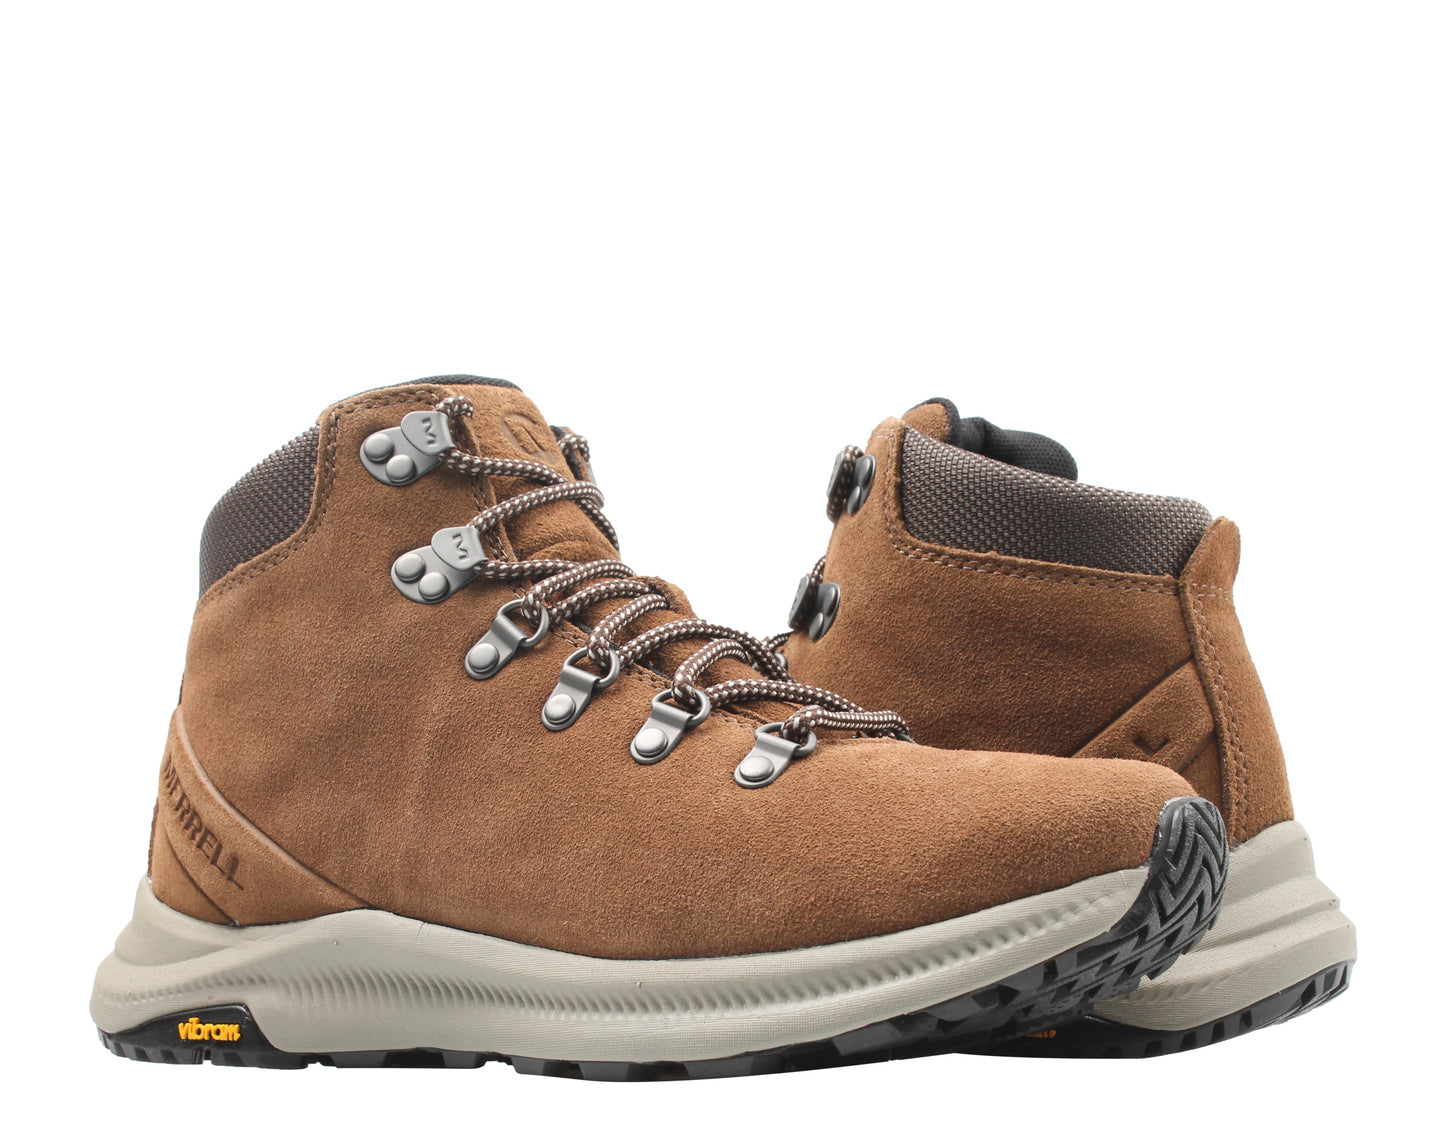 Merrell Ontario Suede Mid Men's Hiking Boots